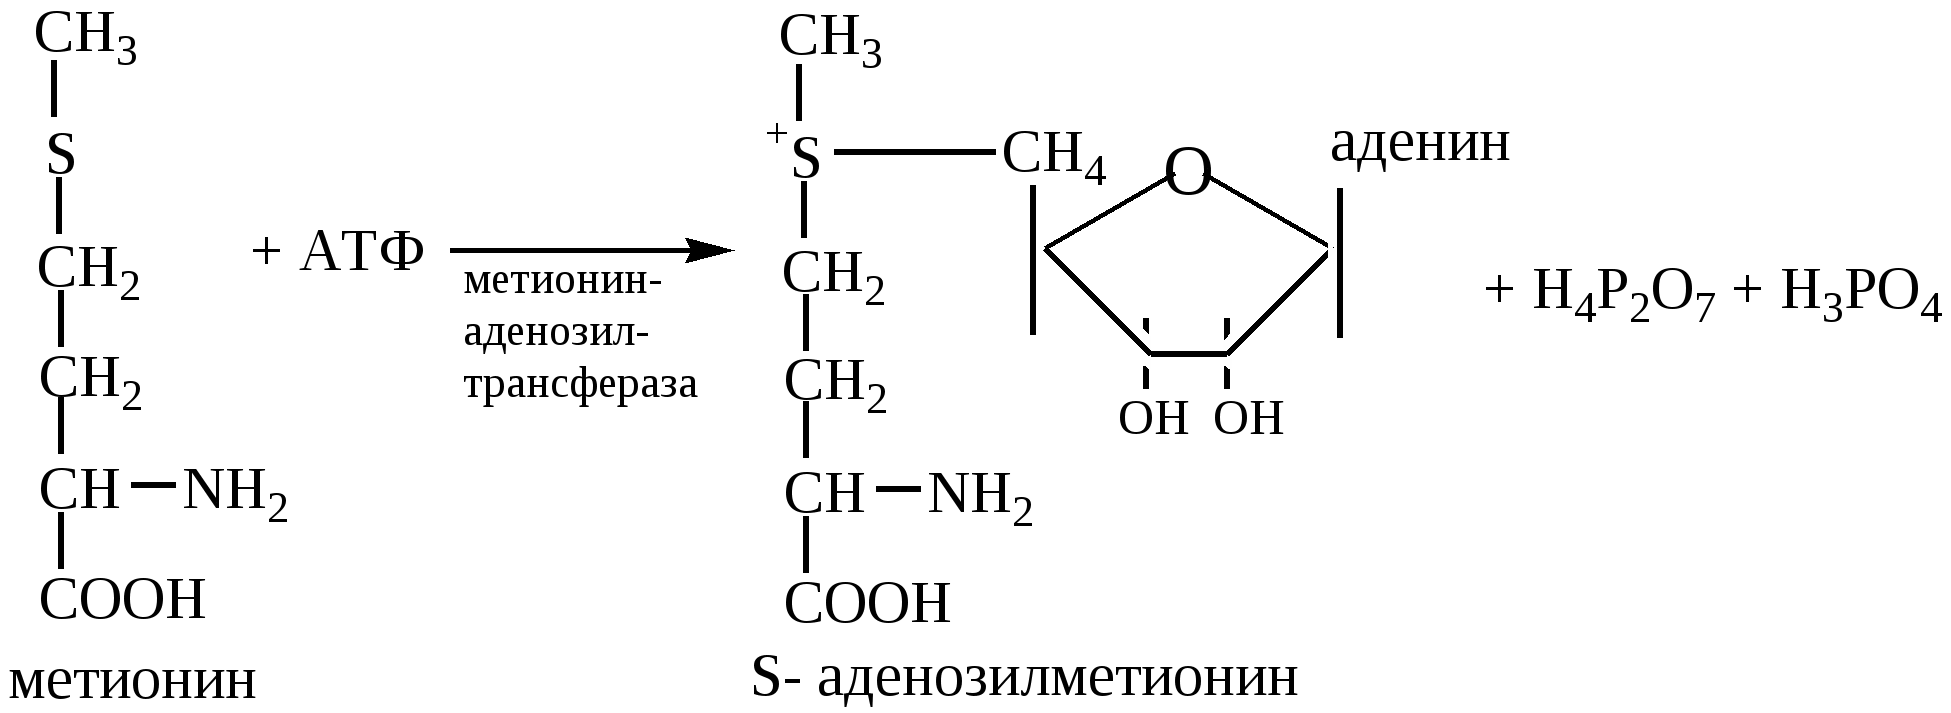 Атф групп. Реакции метилирования с участием s-аденозилметионина. Реакция активации метионина. Реакция образования активной формы метионина. S-аденозилметионин реакции метилирования.